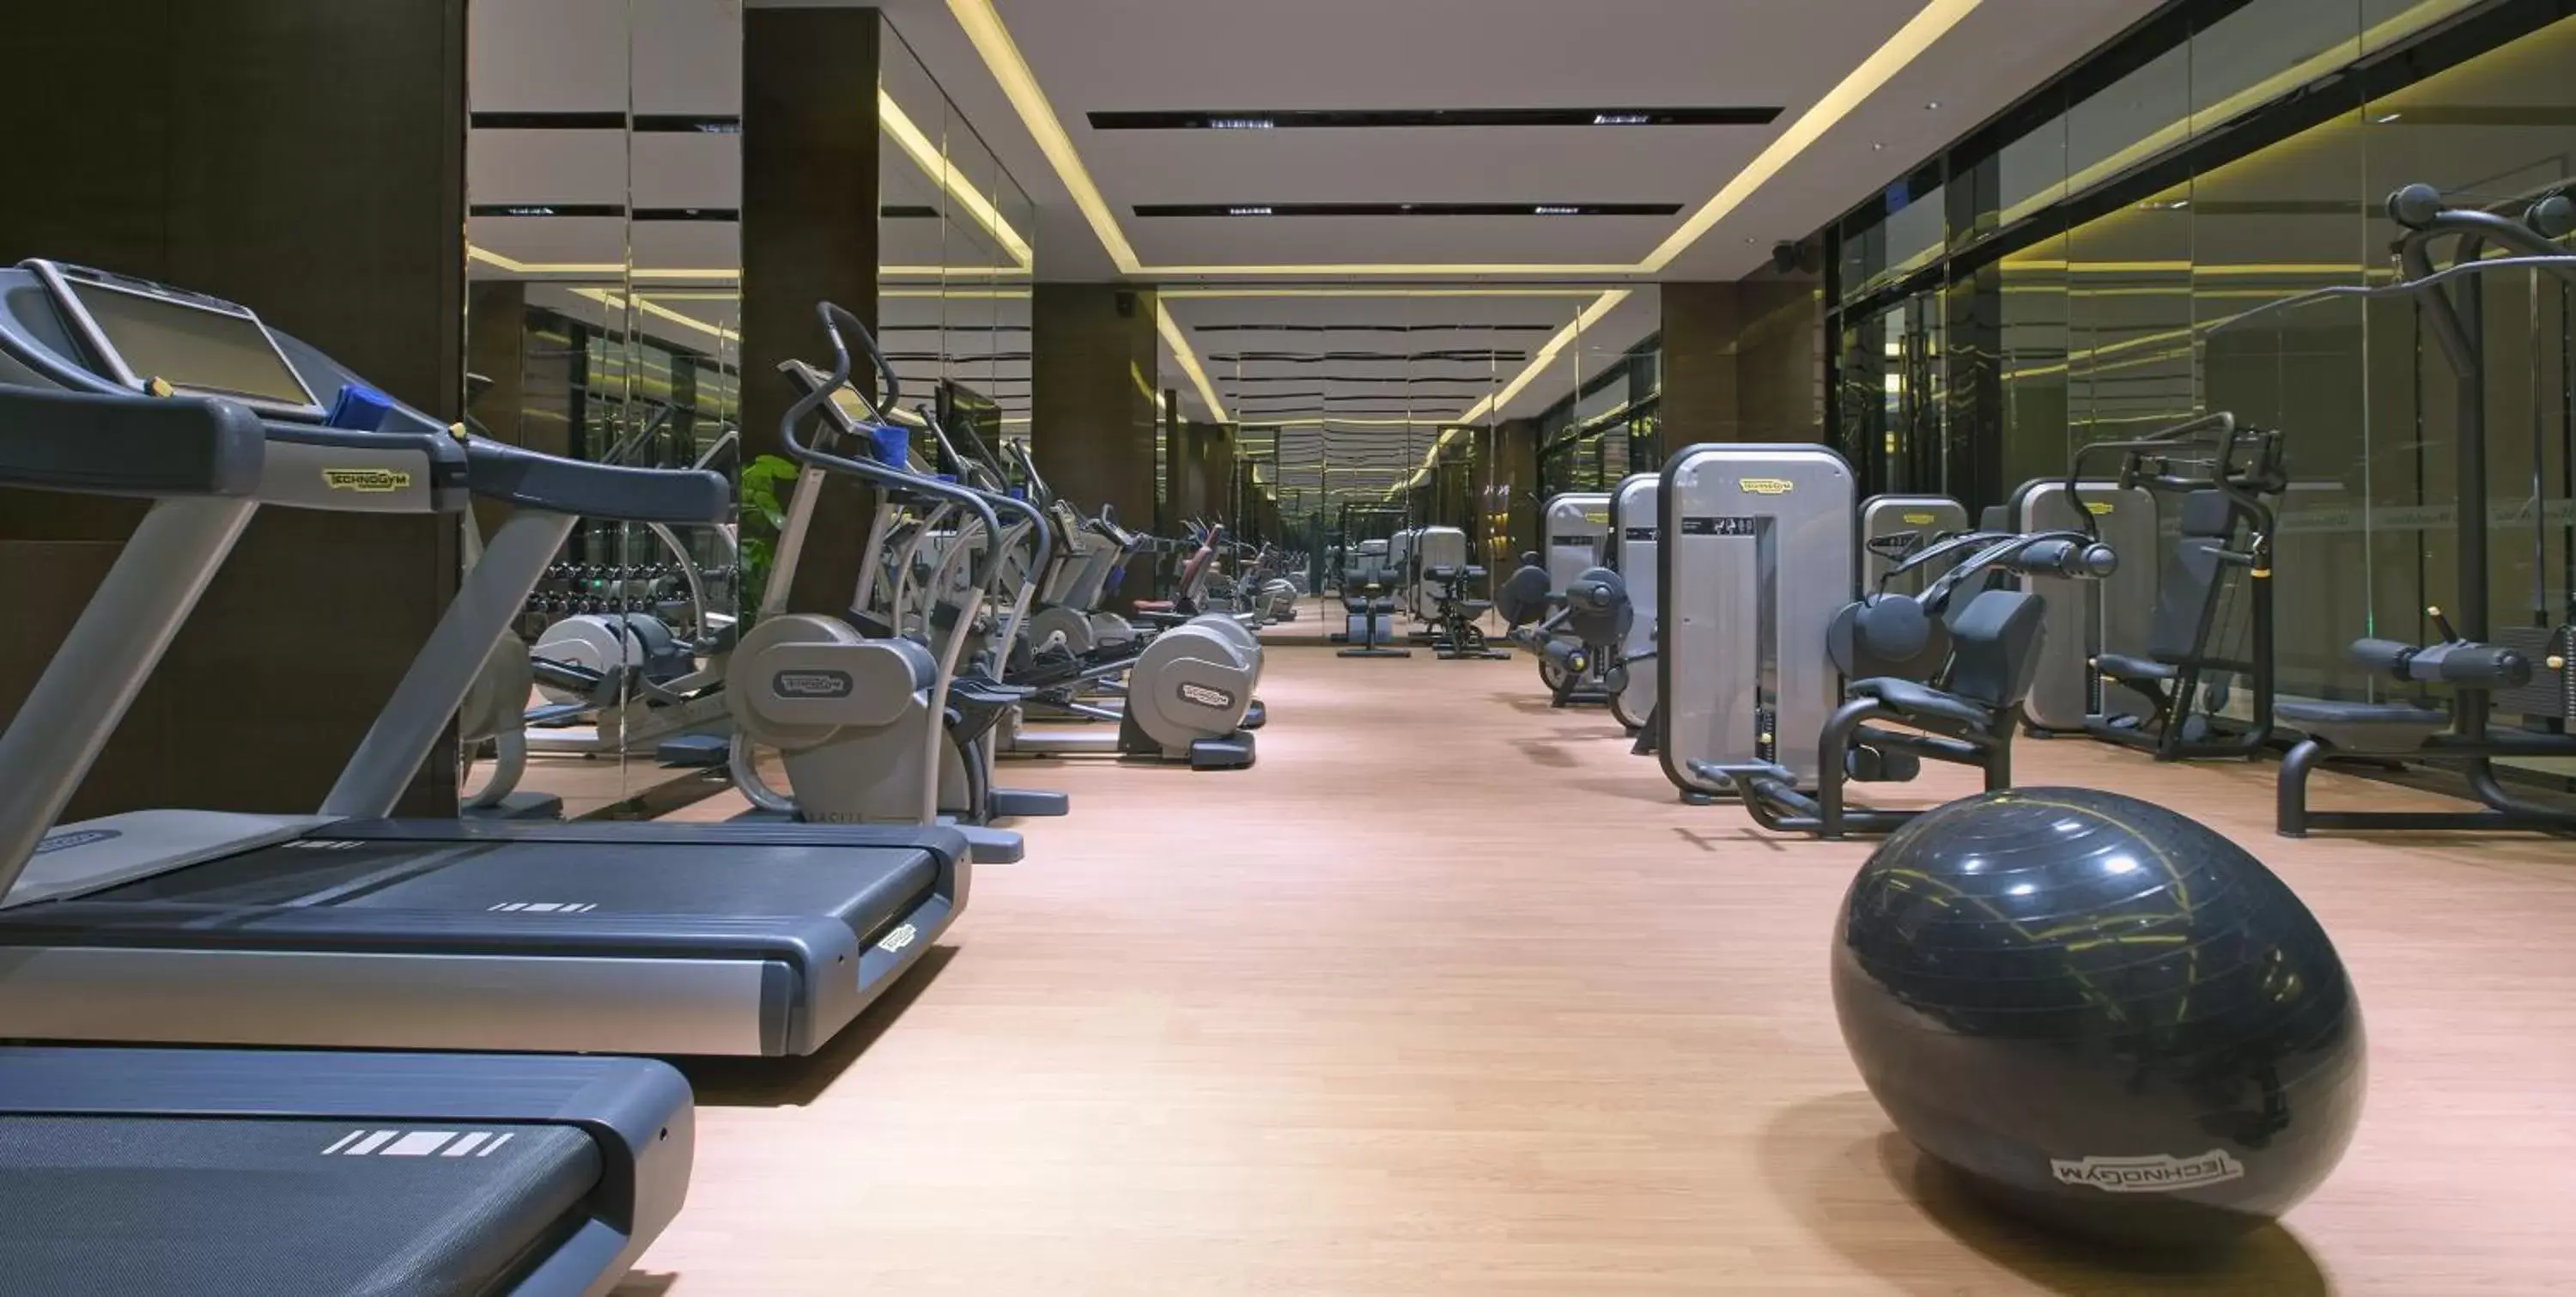 Fitness centre/facilities, Fitness Center/Facilities in Wanda Vista Kunming